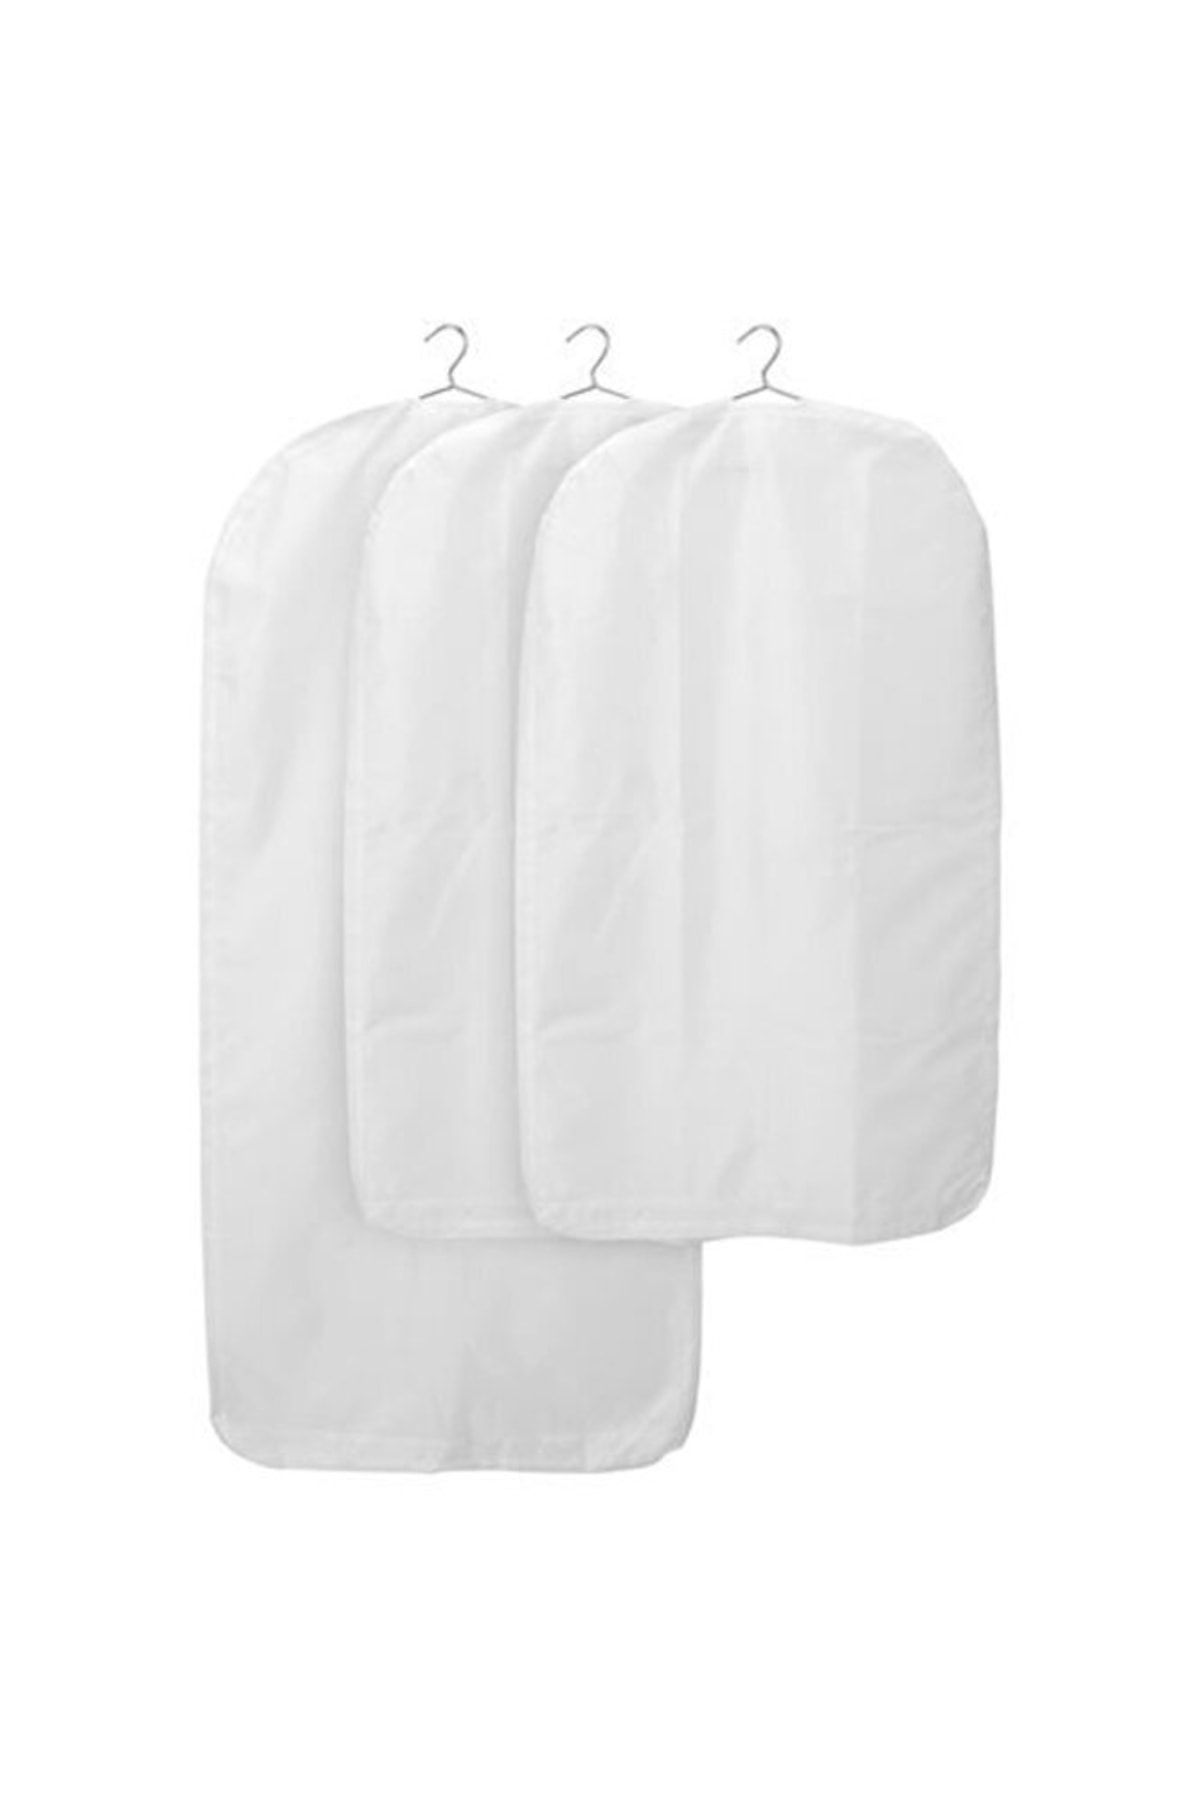 IKEA Skubb Elbise Kılıfı, Beyaz